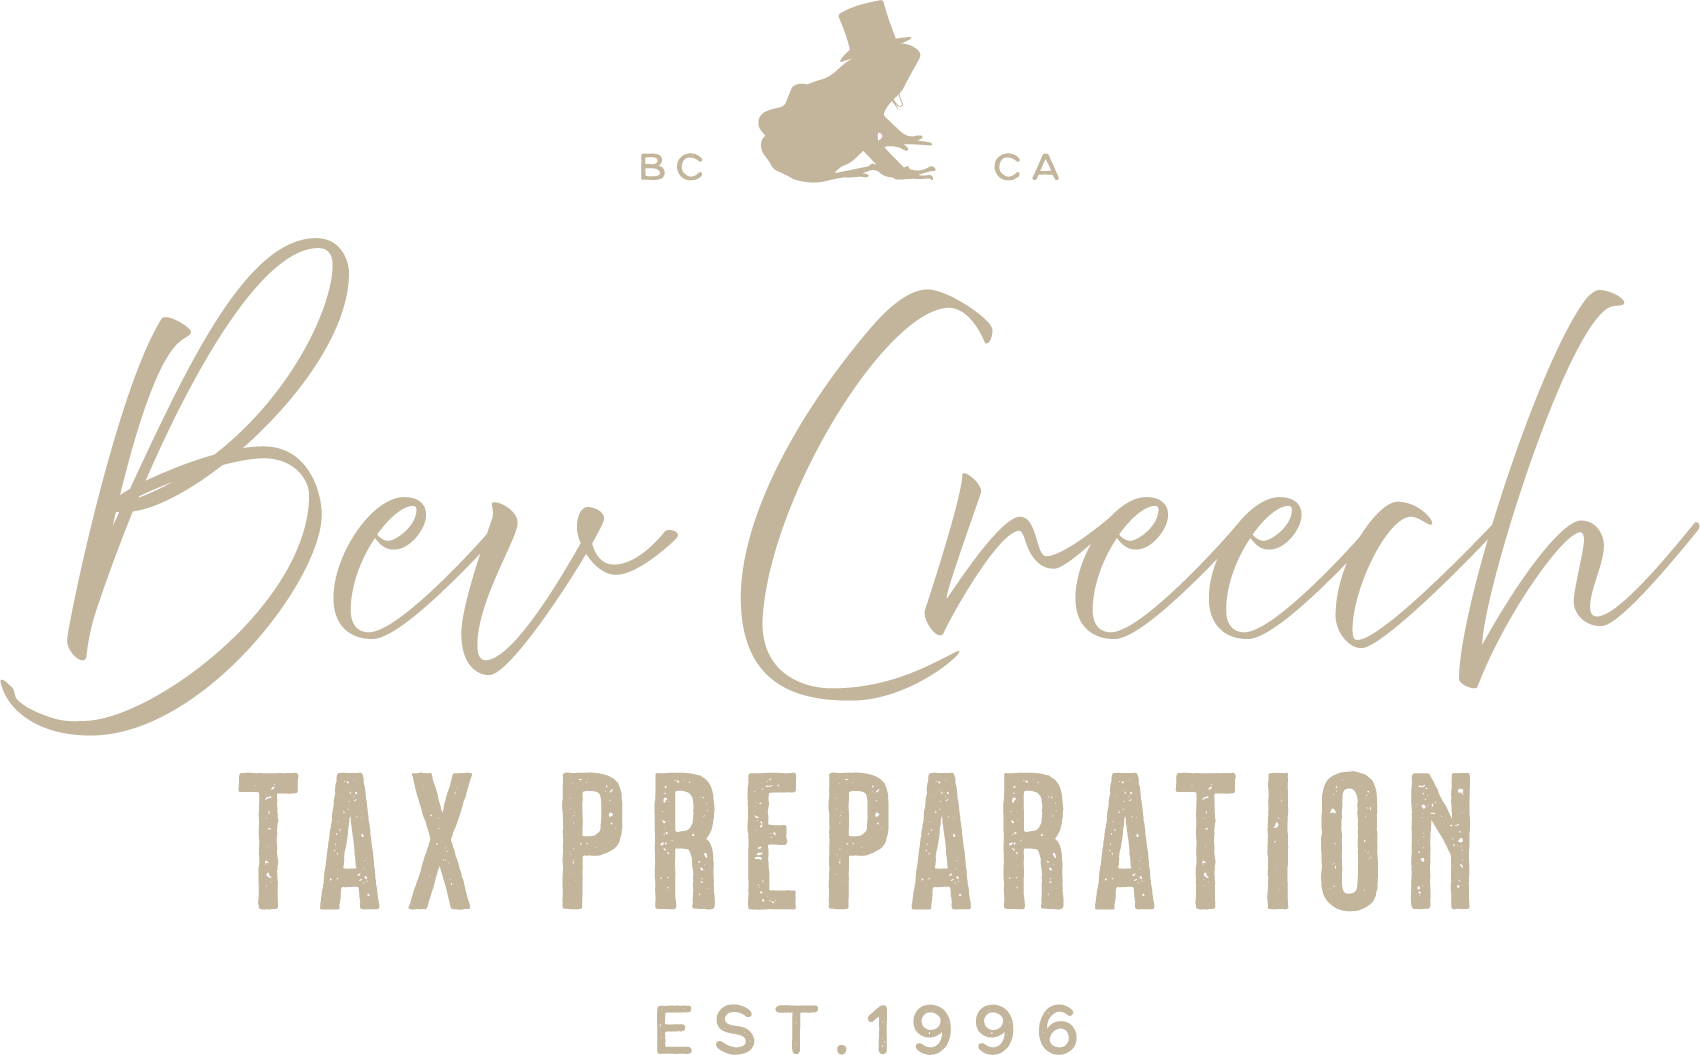 2022 Bev Creech Tax Preparation Full logo